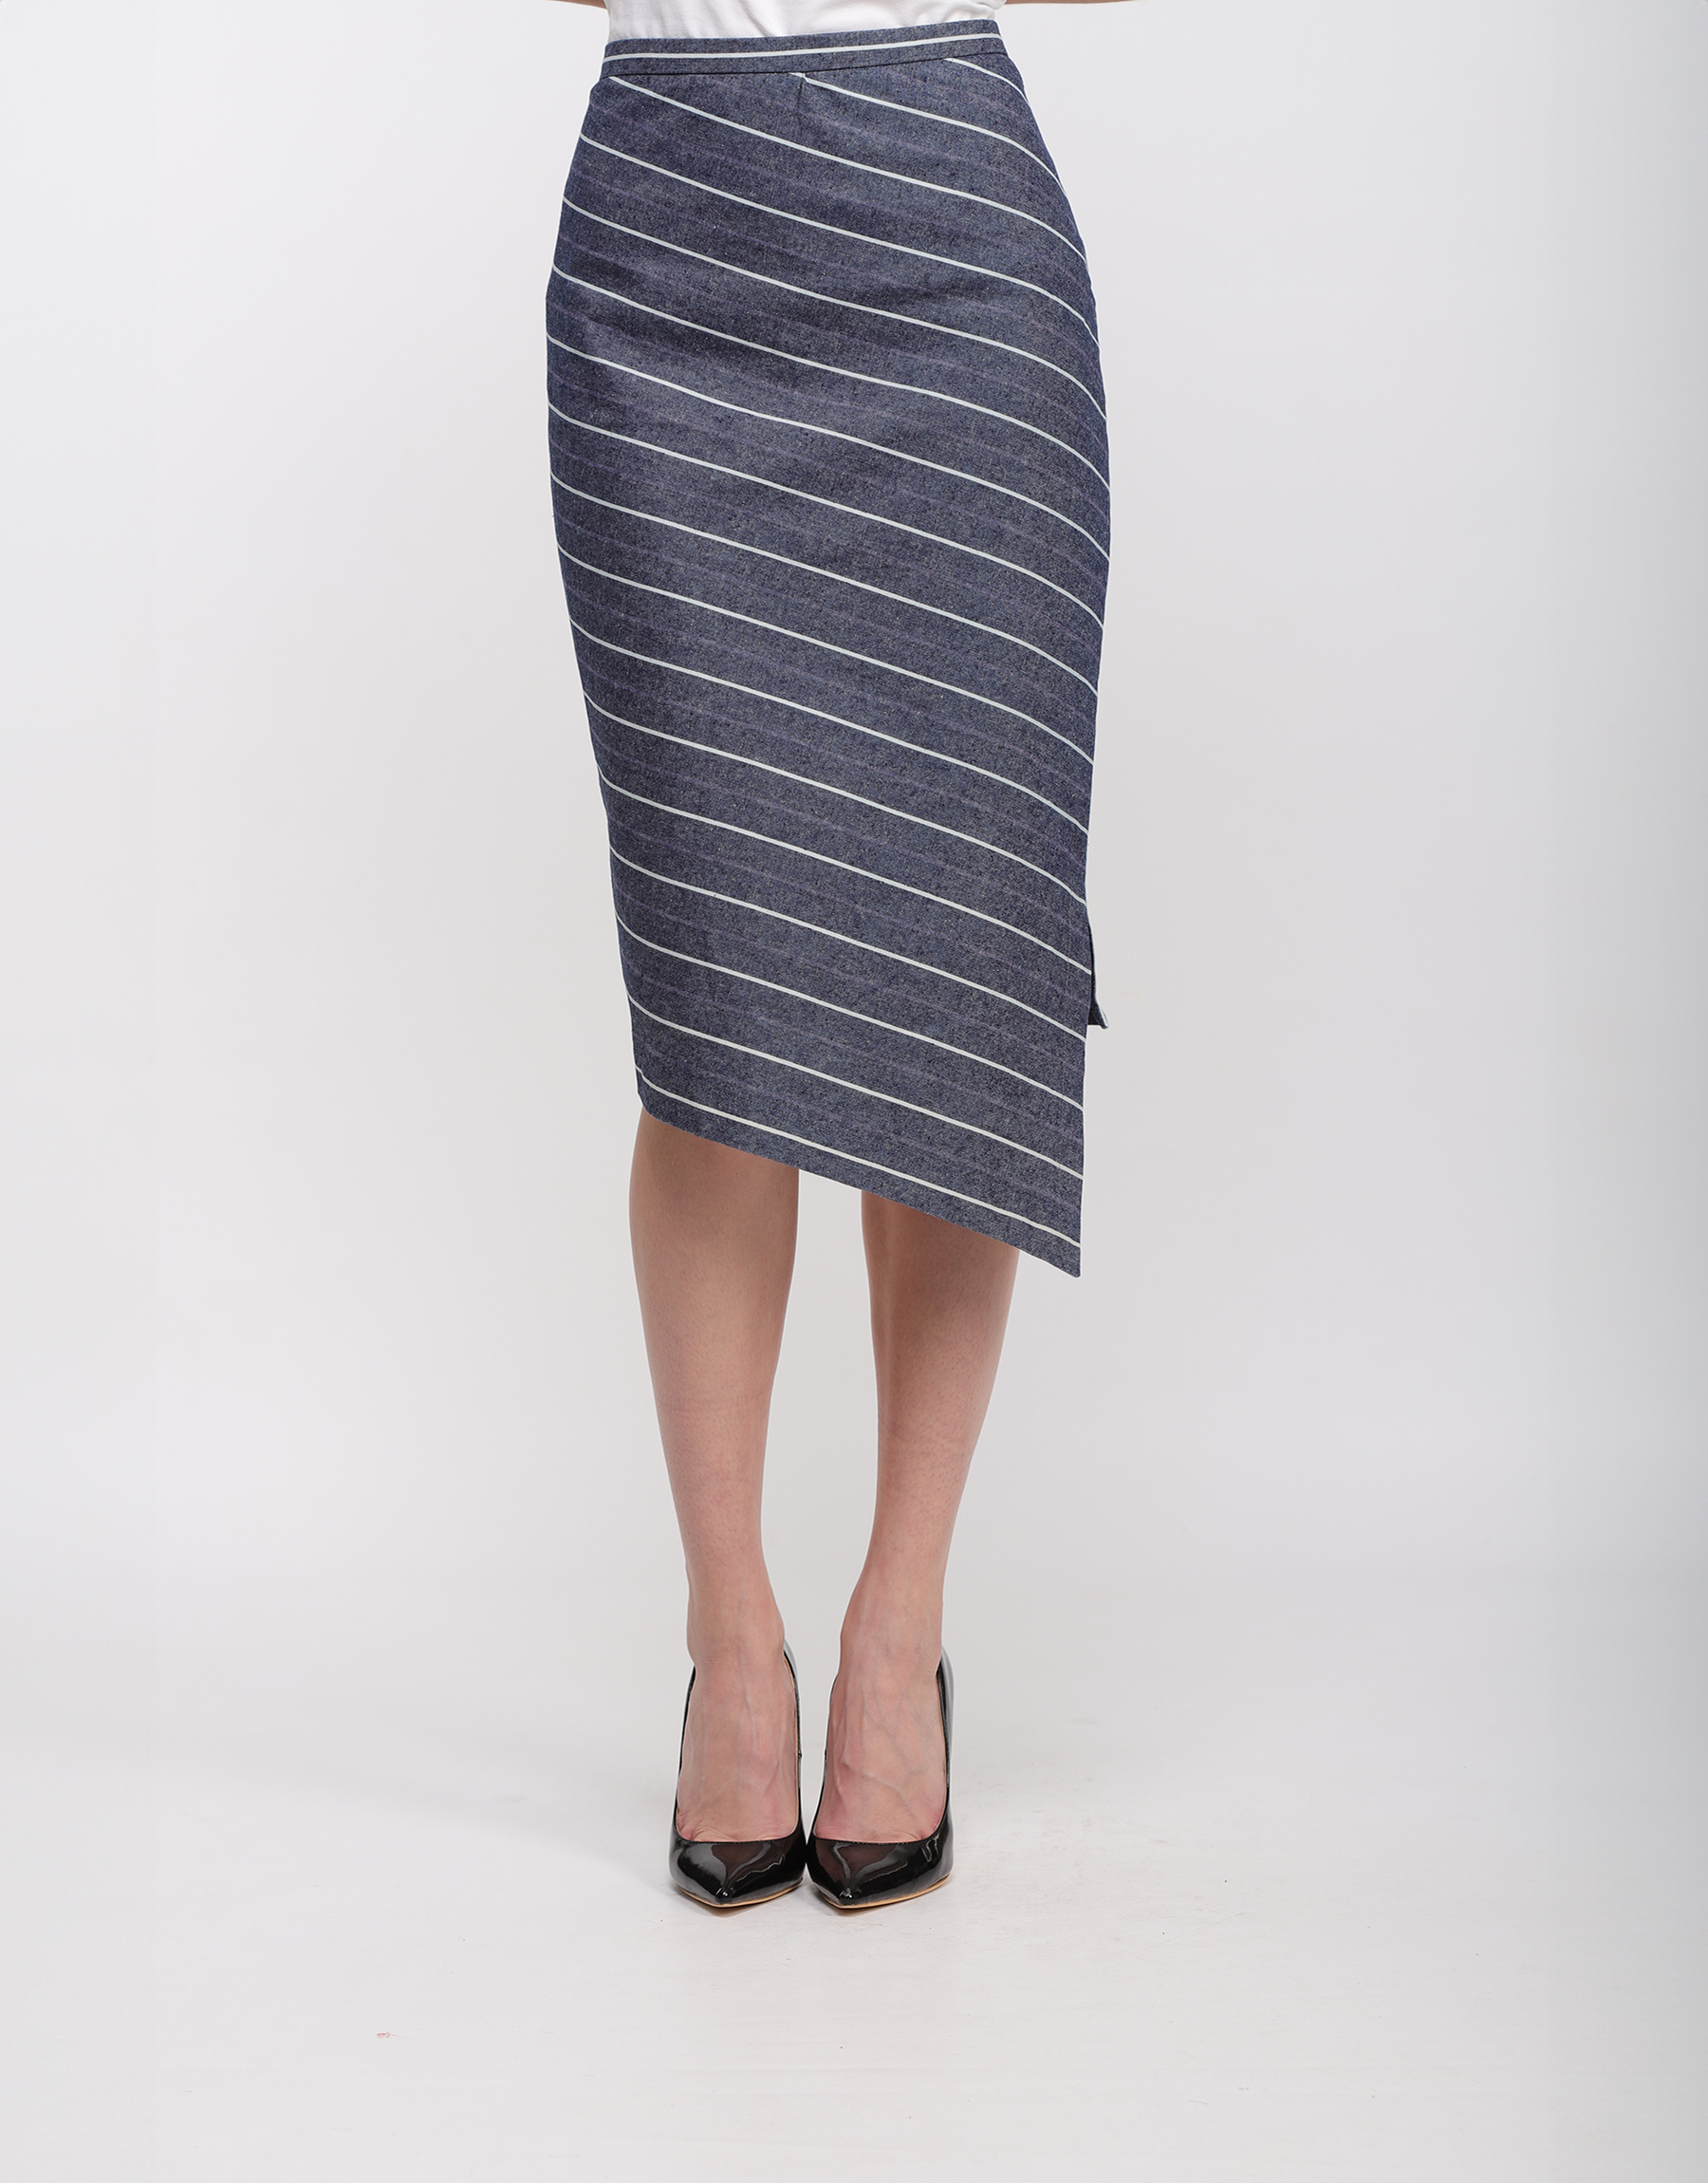 Asymmetrical pencil midi skirt in blue cotton with white stripes